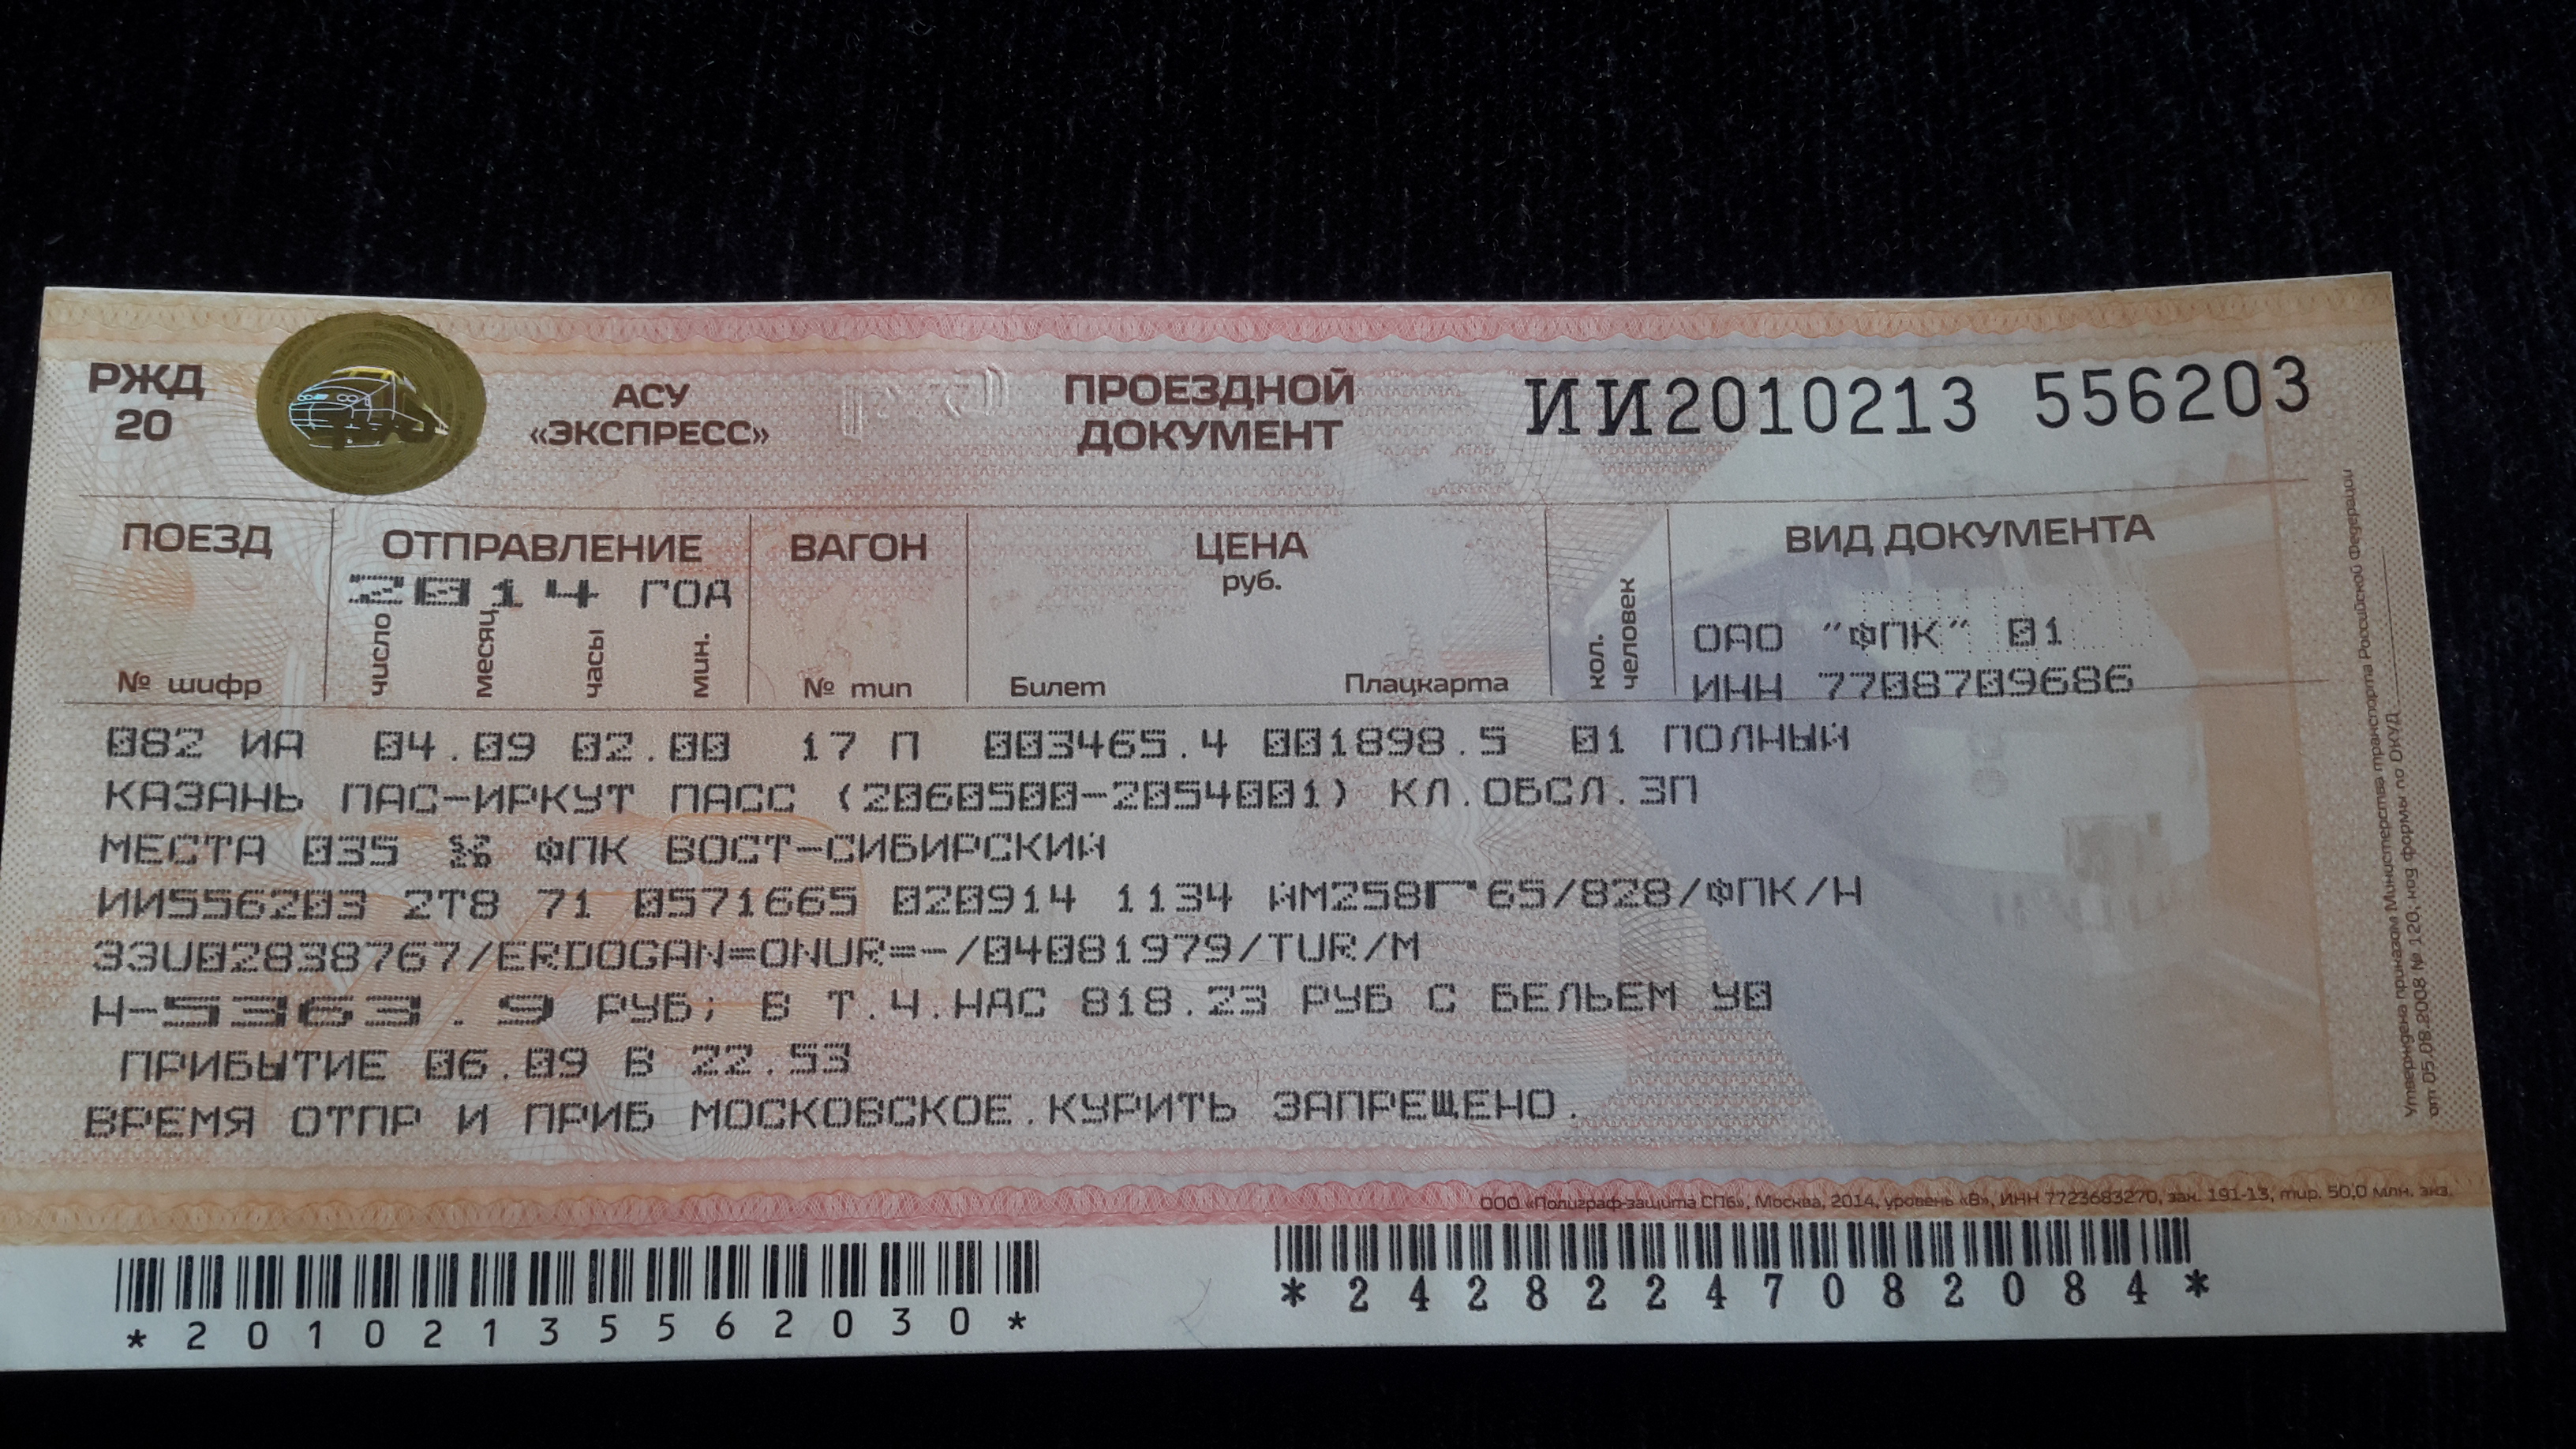 Полный билет на поезд. Проездной билет на поезд. Проездной документ. Билет на поезд Оренбург Москва. Фото билета на поезд плацкарт.